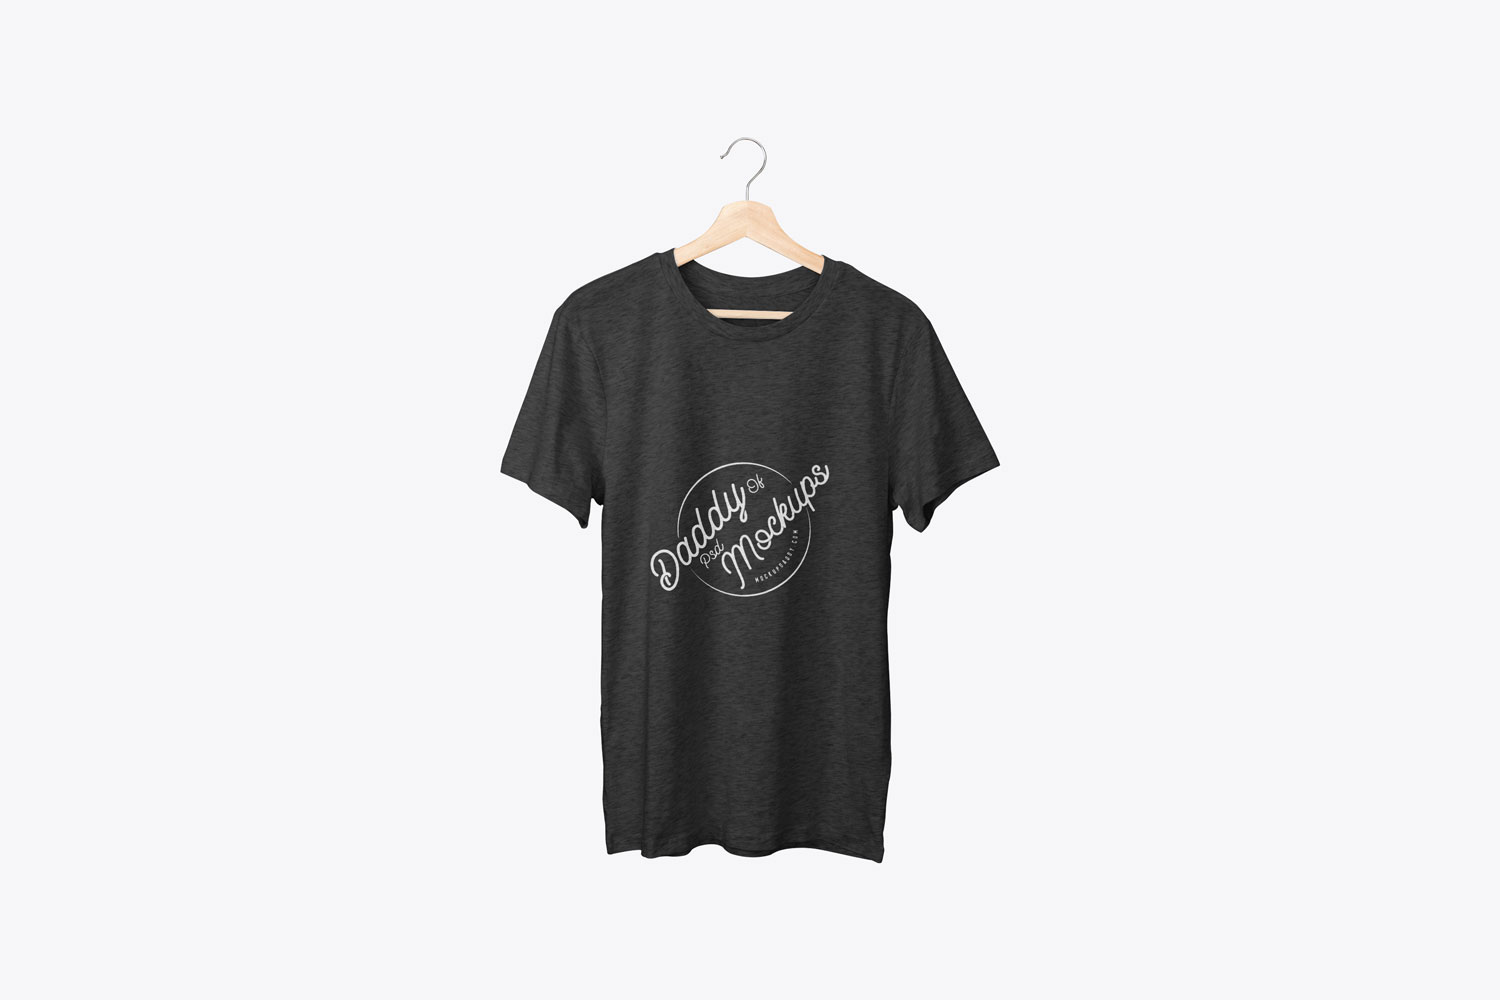 Buy > t shirt on hanger mockup > in stock